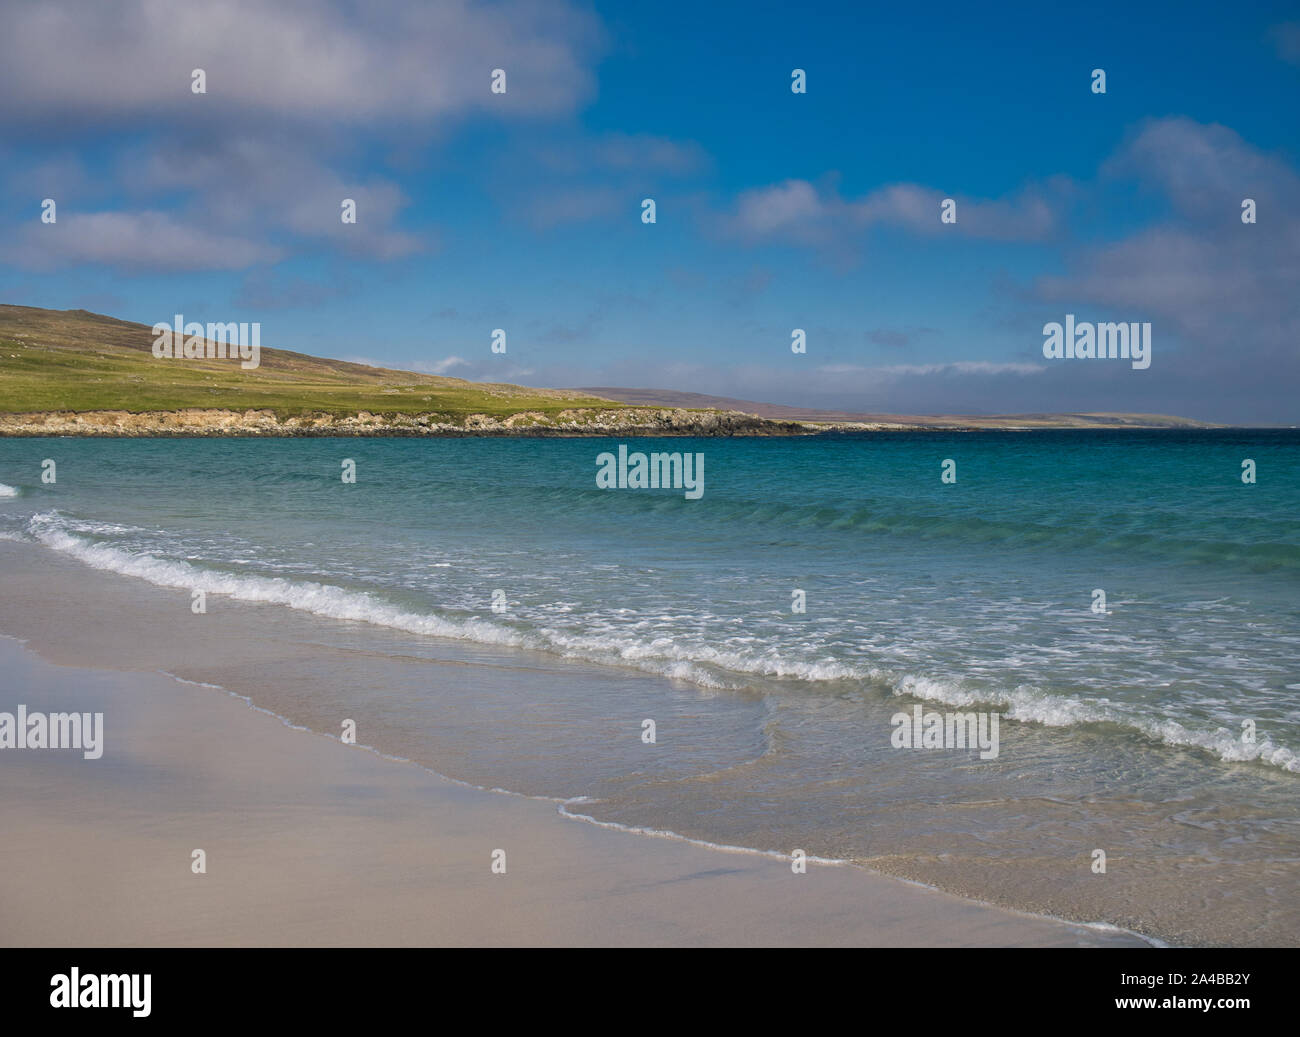 Der weiße Sand und blaues Meer bei Sandwick auf der Insel Unst in Shetland, Schottland, Großbritannien - ein idyllischer, unberührten, abgelegenen Strand. Stockfoto